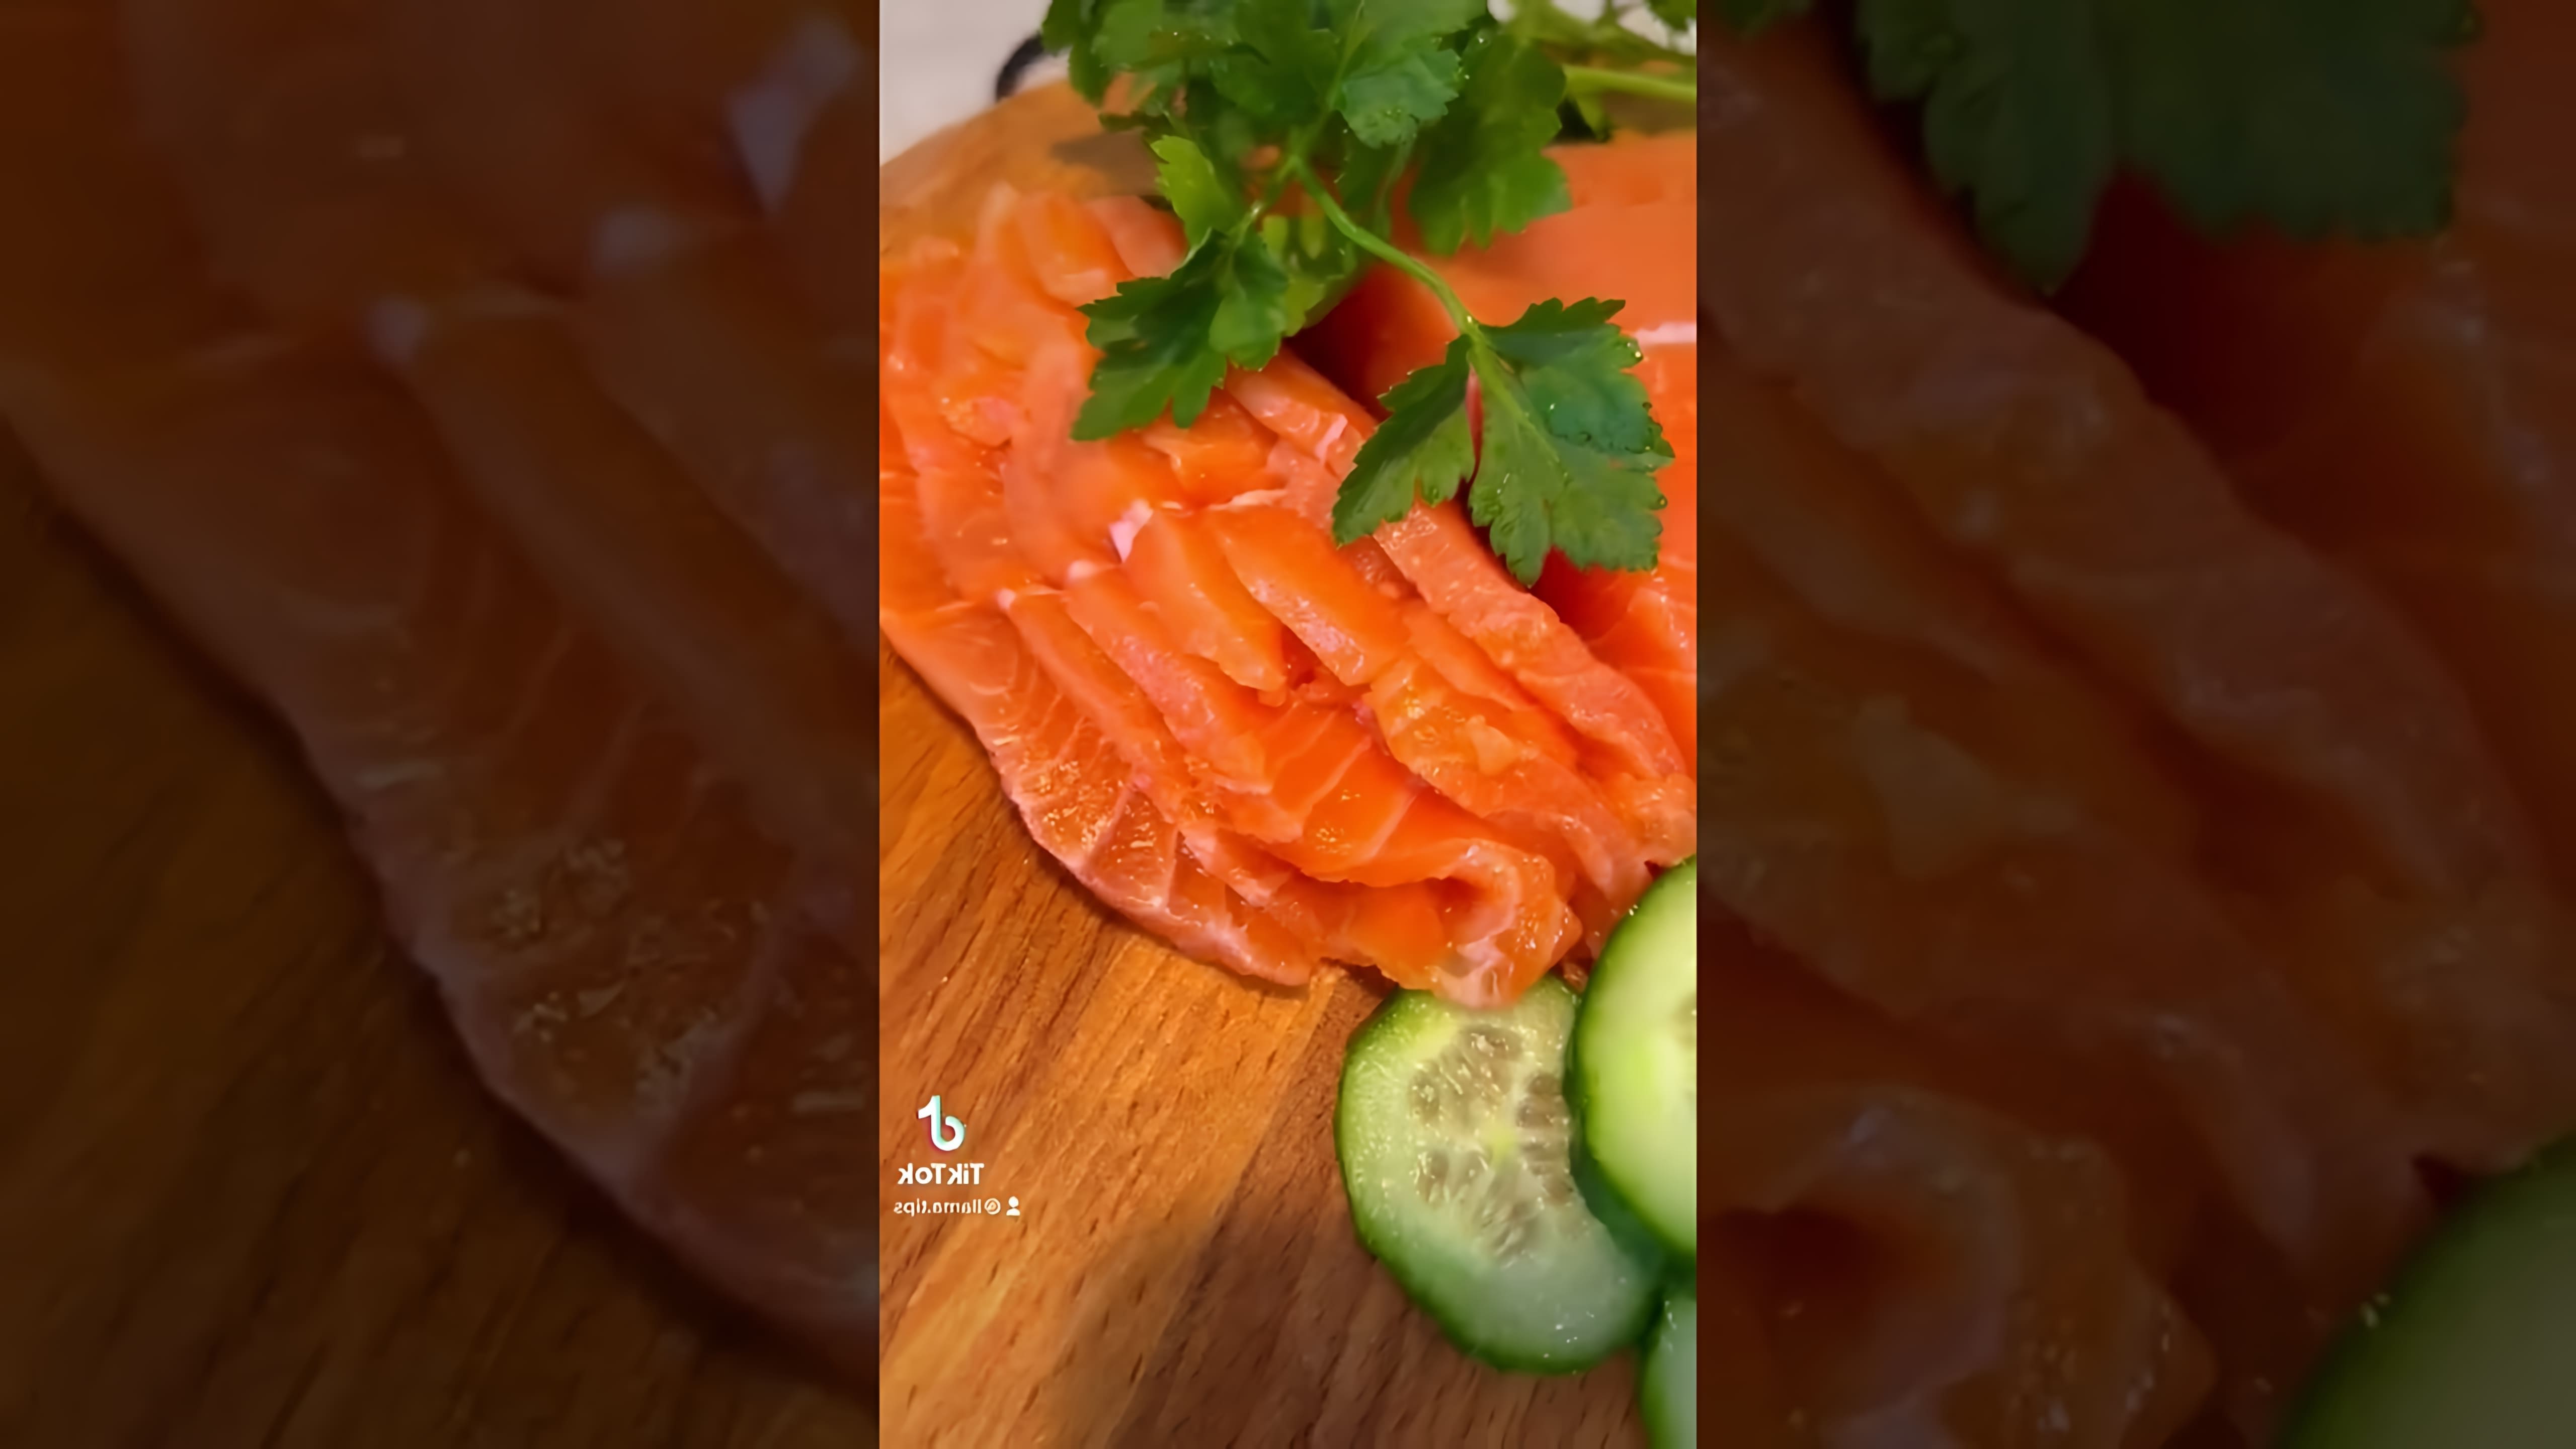 "Как засолить красную рыбу вкусно и быстро" - это видео-ролик, который поможет вам приготовить вкусную и ароматную красную рыбу